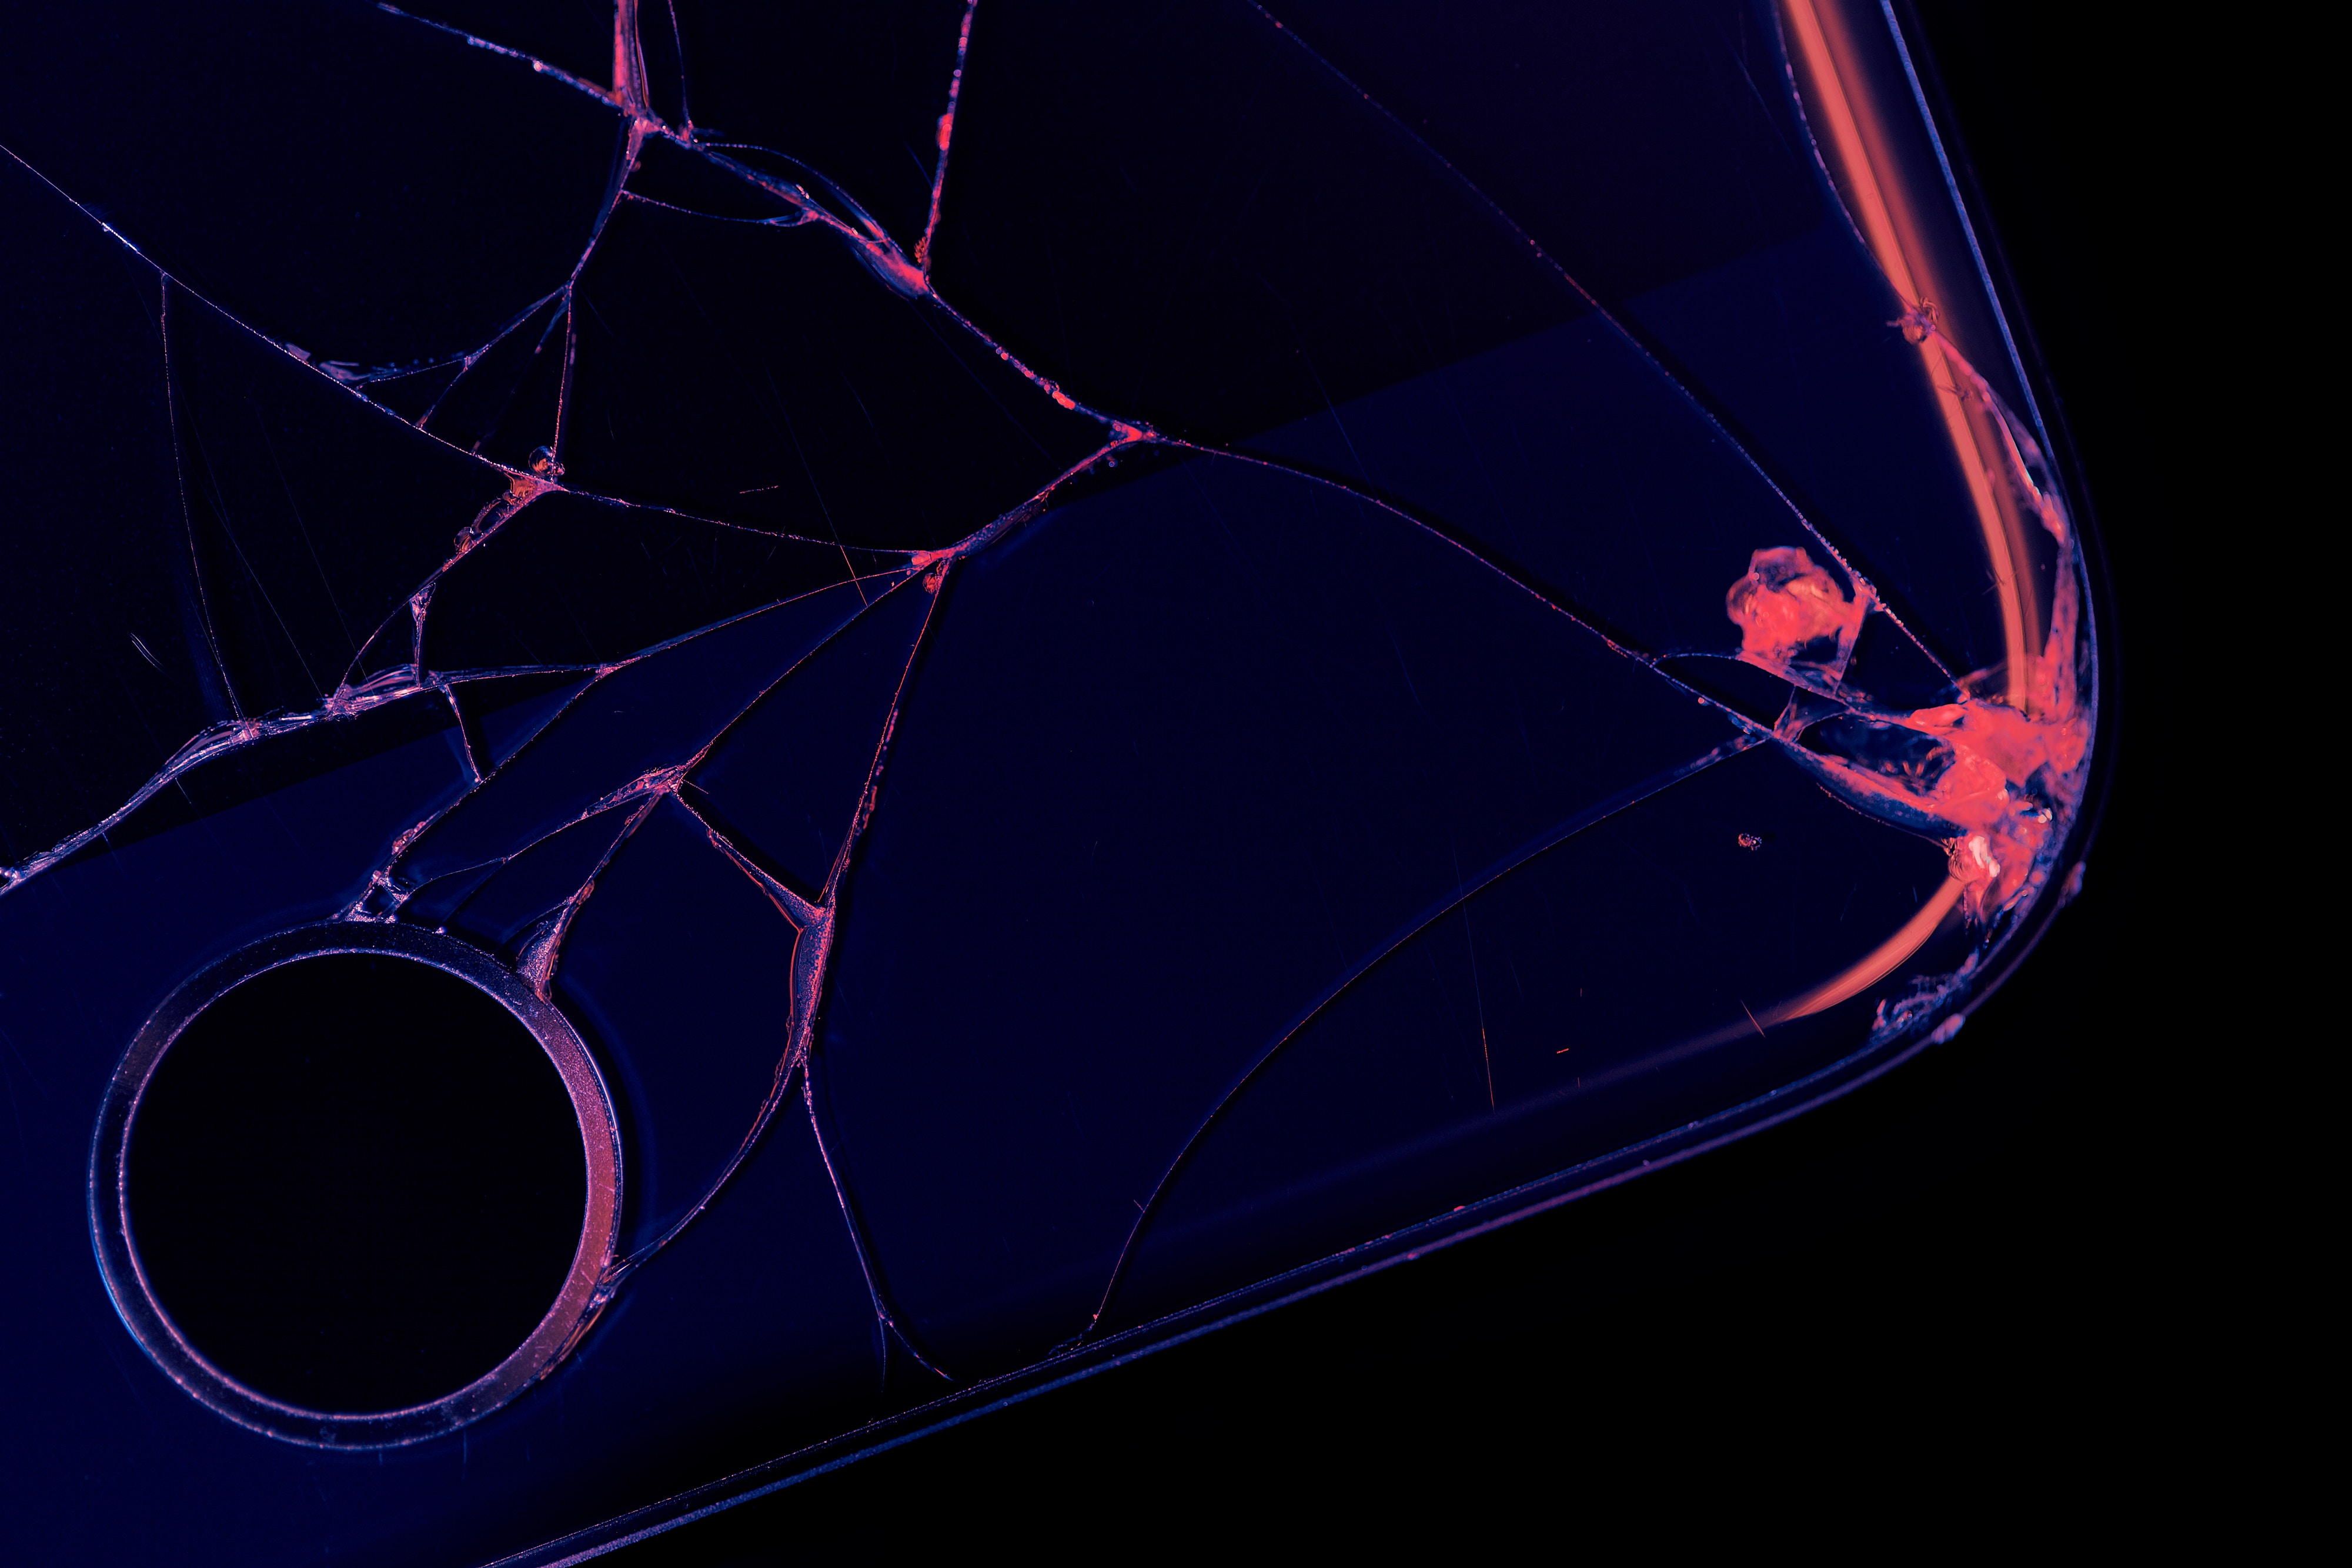 разбитый сломанный iphone apple покупка с рук